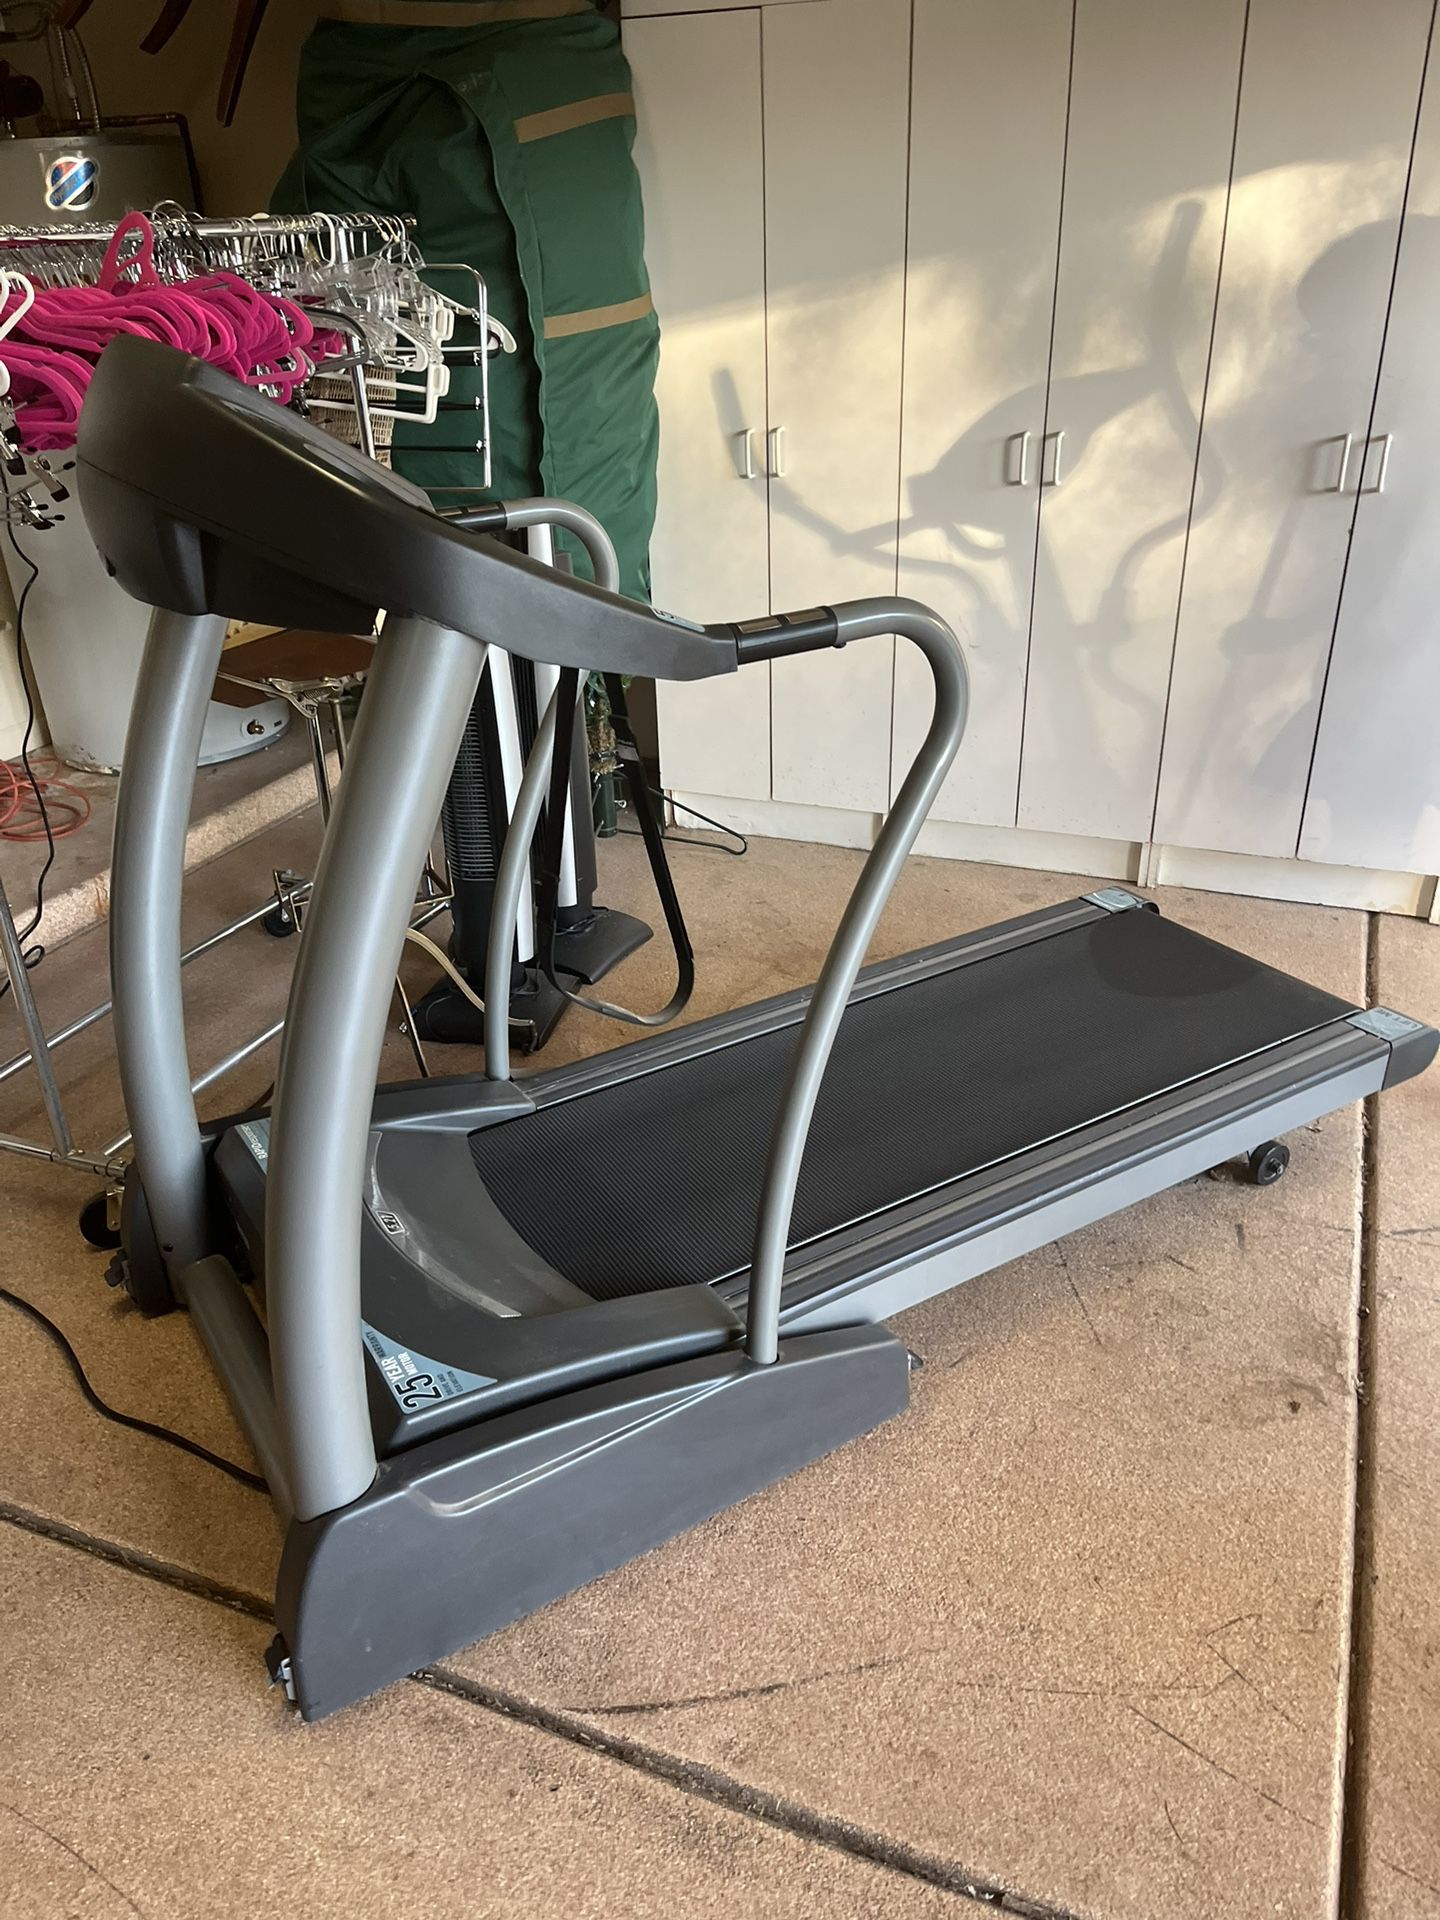 Horizon Fitness treadmill